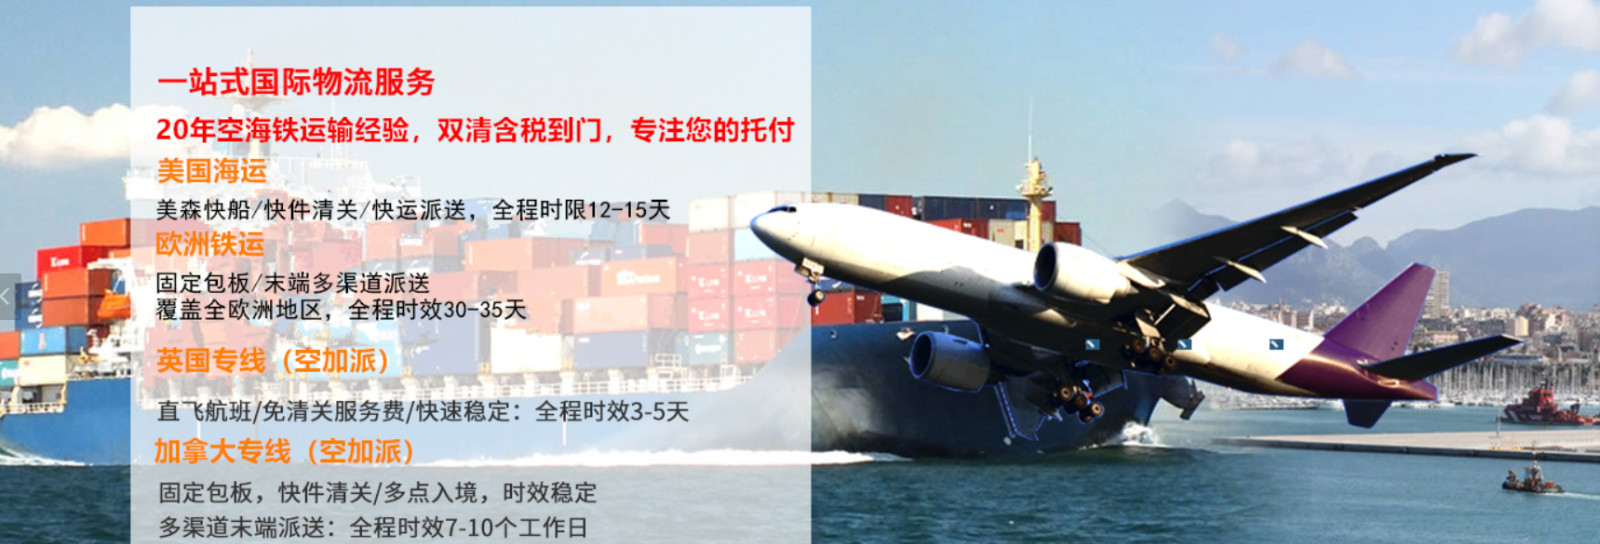 危险品海运航线 哪些船公司承接危险品海运 危险品海运承接哪些货物